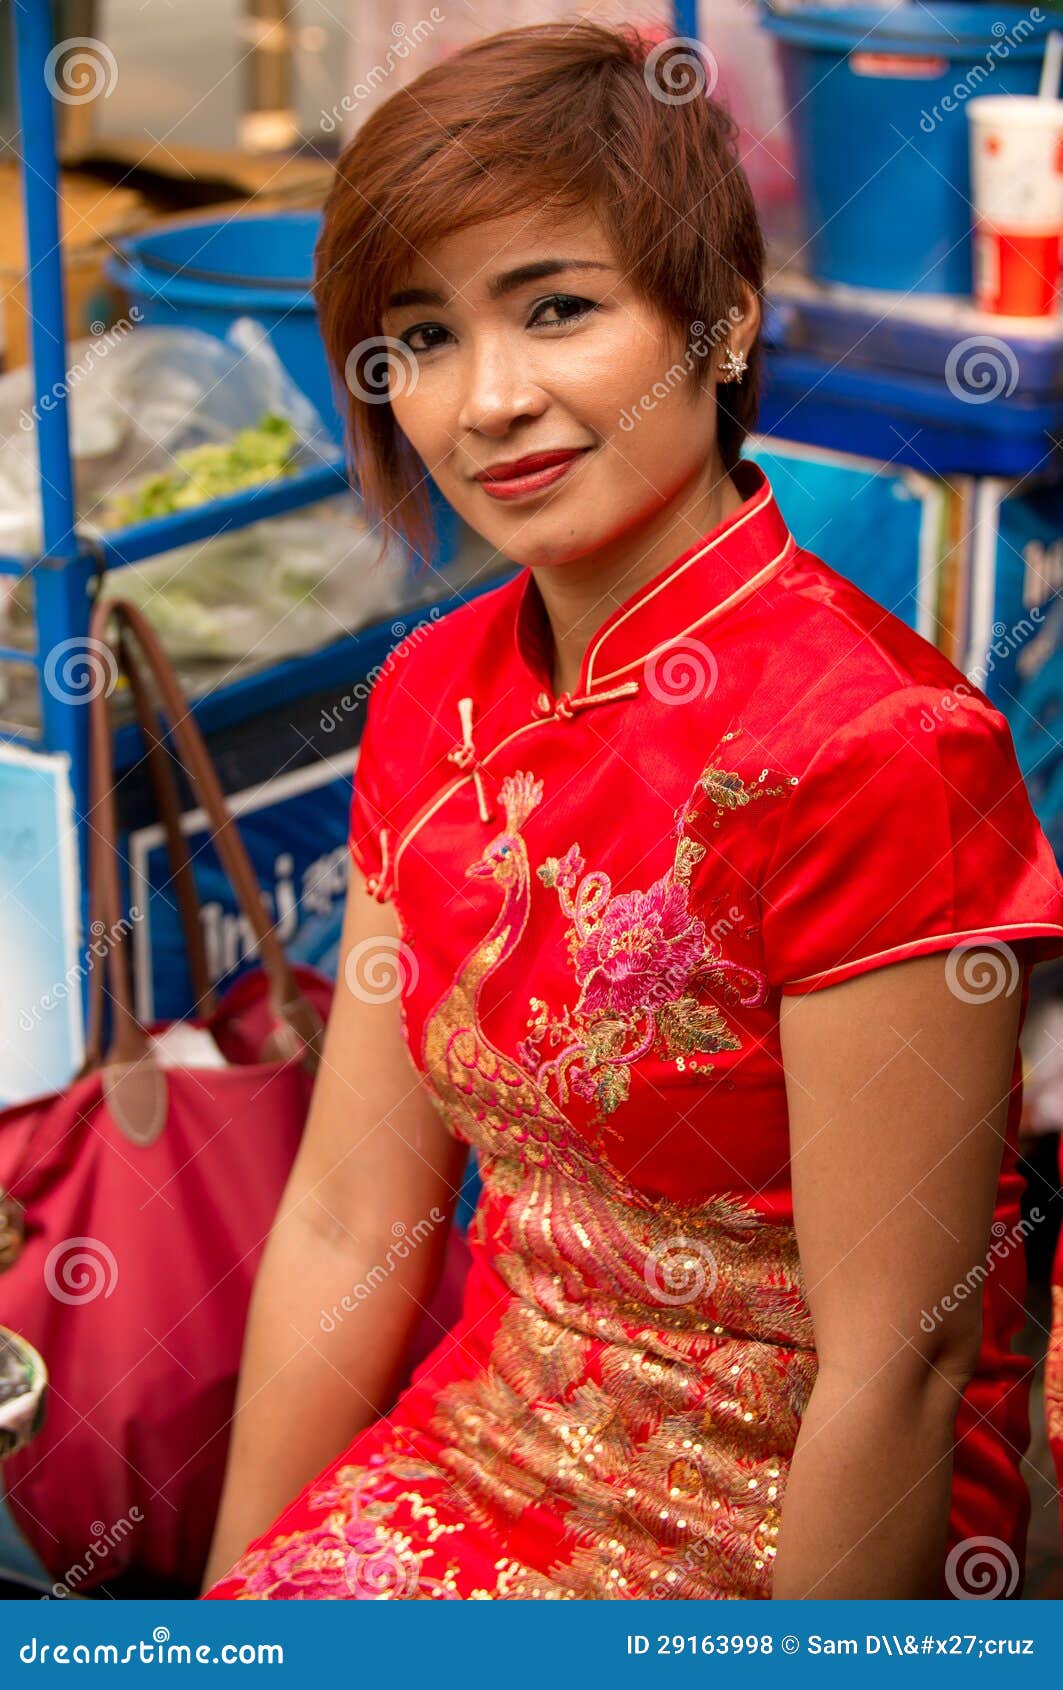 BANGKOK, - 10 DE FEBRERO: Año Nuevo chino 2013 - celebraciones adentro. BANGKOK - 10 DE FEBRERO: Año Nuevo chino 2013 - vendedor ambulante en Chinatown, Bangkok, Tailandia el 10 de febrero de 2013